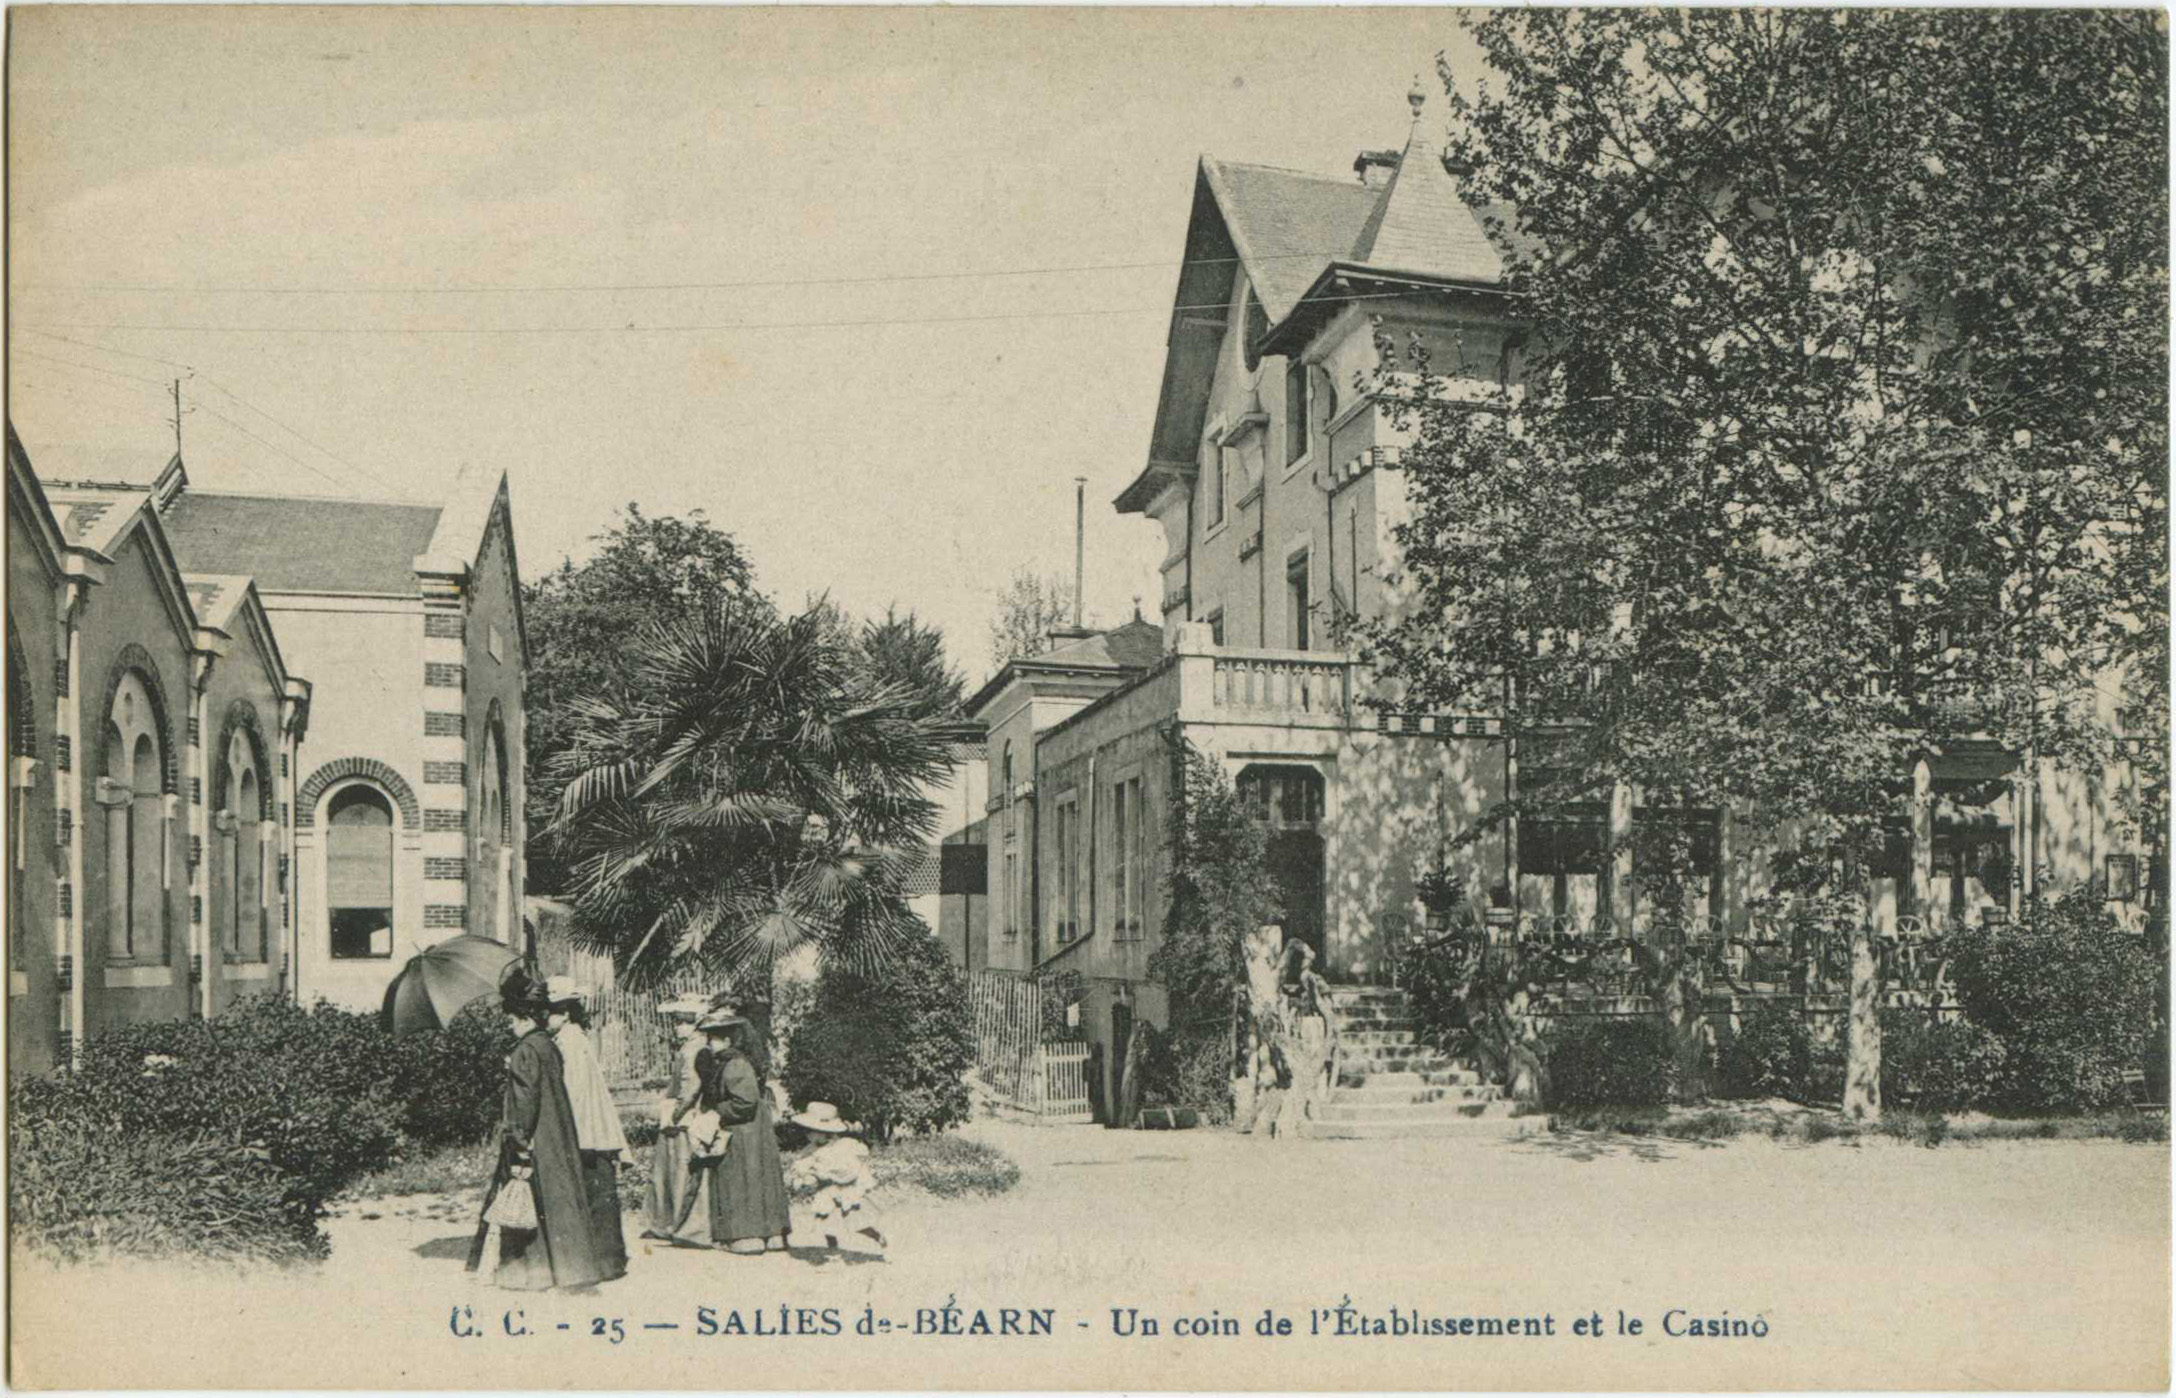 Salies-de-Béarn - Un coin de l'Établissement et le Casino